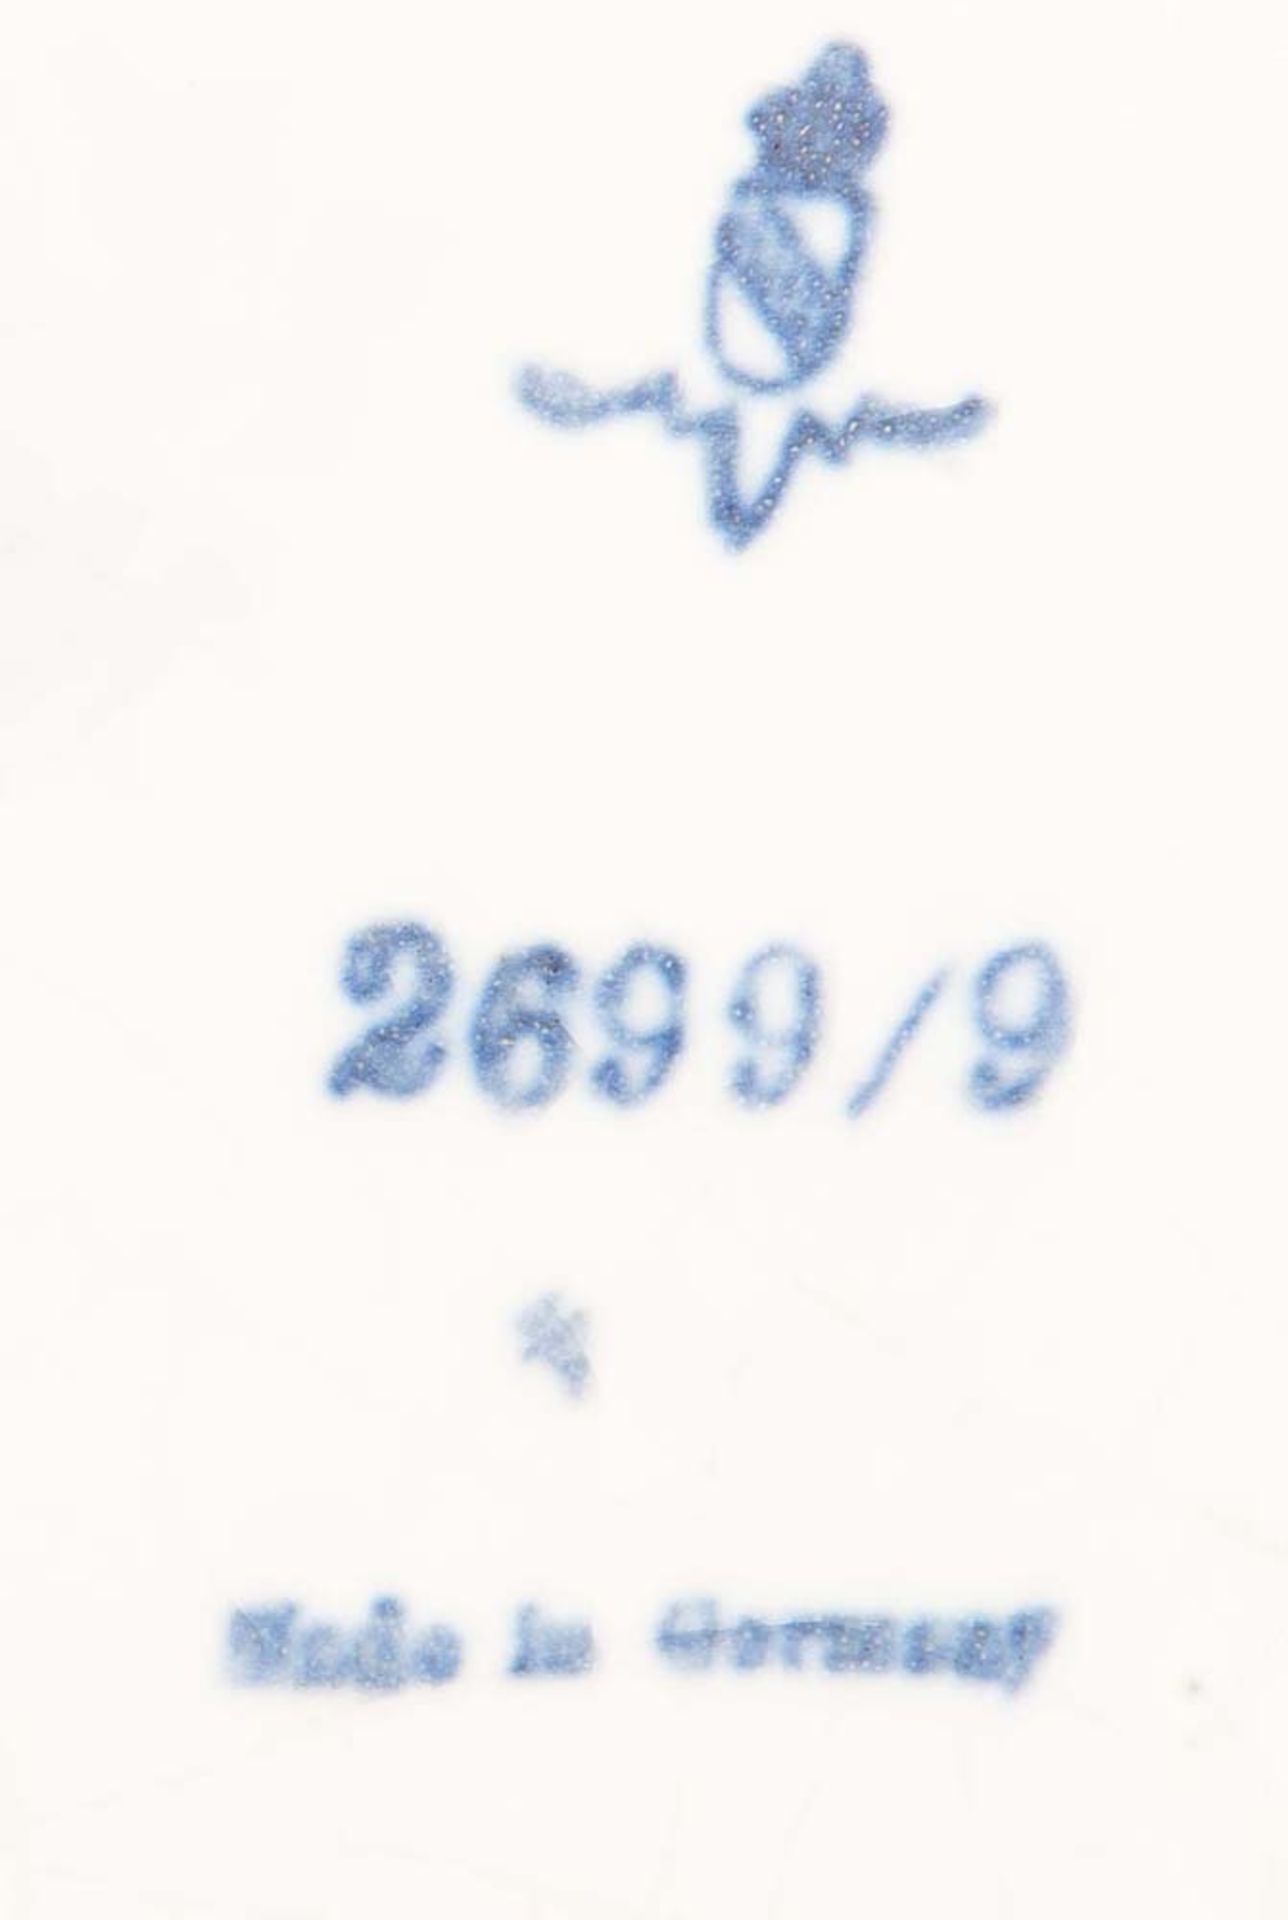 Bowlengefäß. Karlsruher Majolika 20. Jh. Irdengut, bunt bemalt, glasiert, Nr. 2699/9, H=29 cm, D= - Image 2 of 3